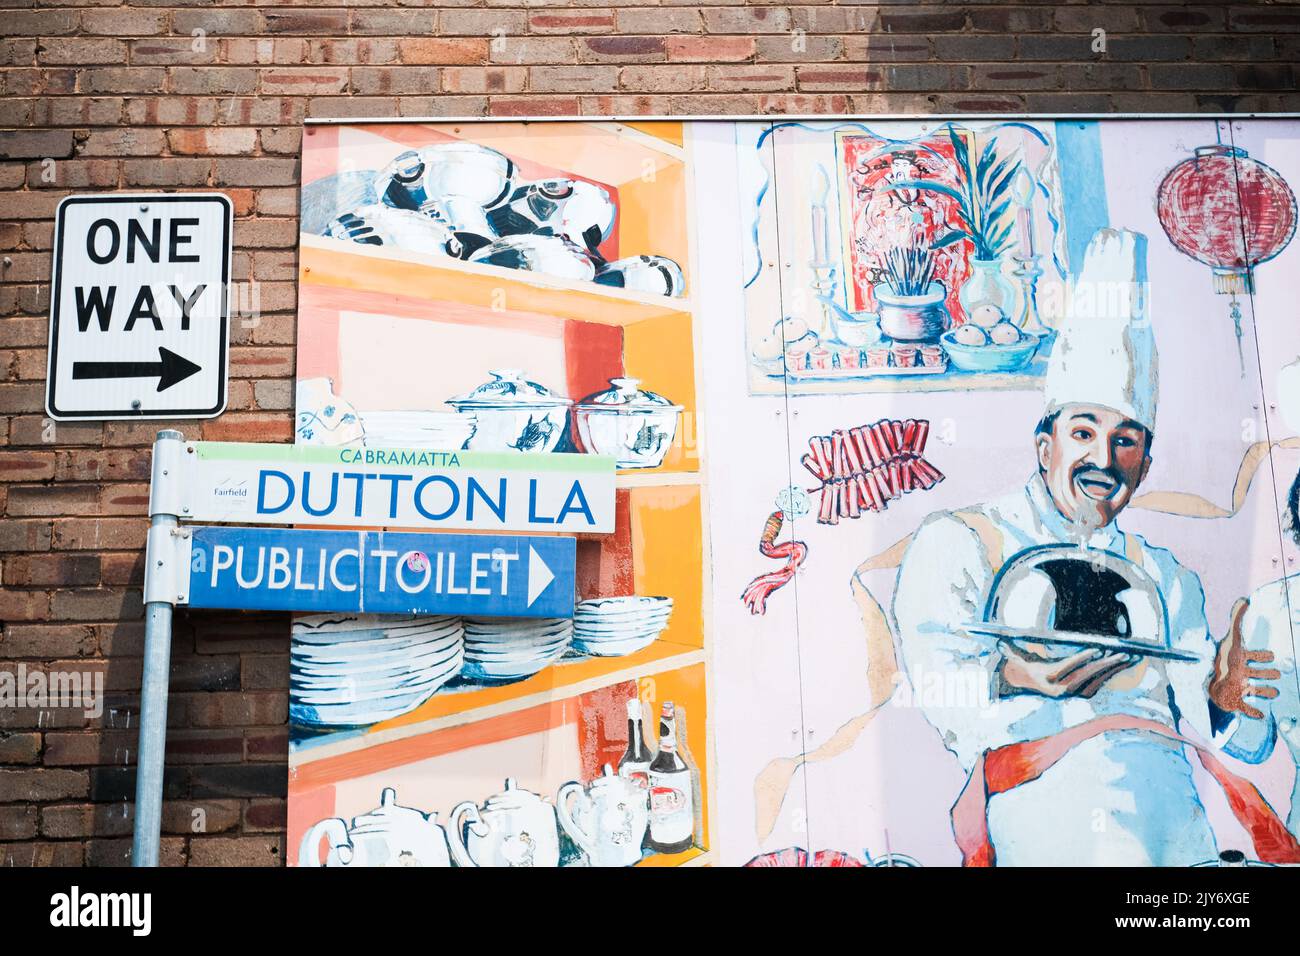 Segnaletica stradale e murale, Dutton Lane, Cabramatta - Sydney, Australia Foto Stock